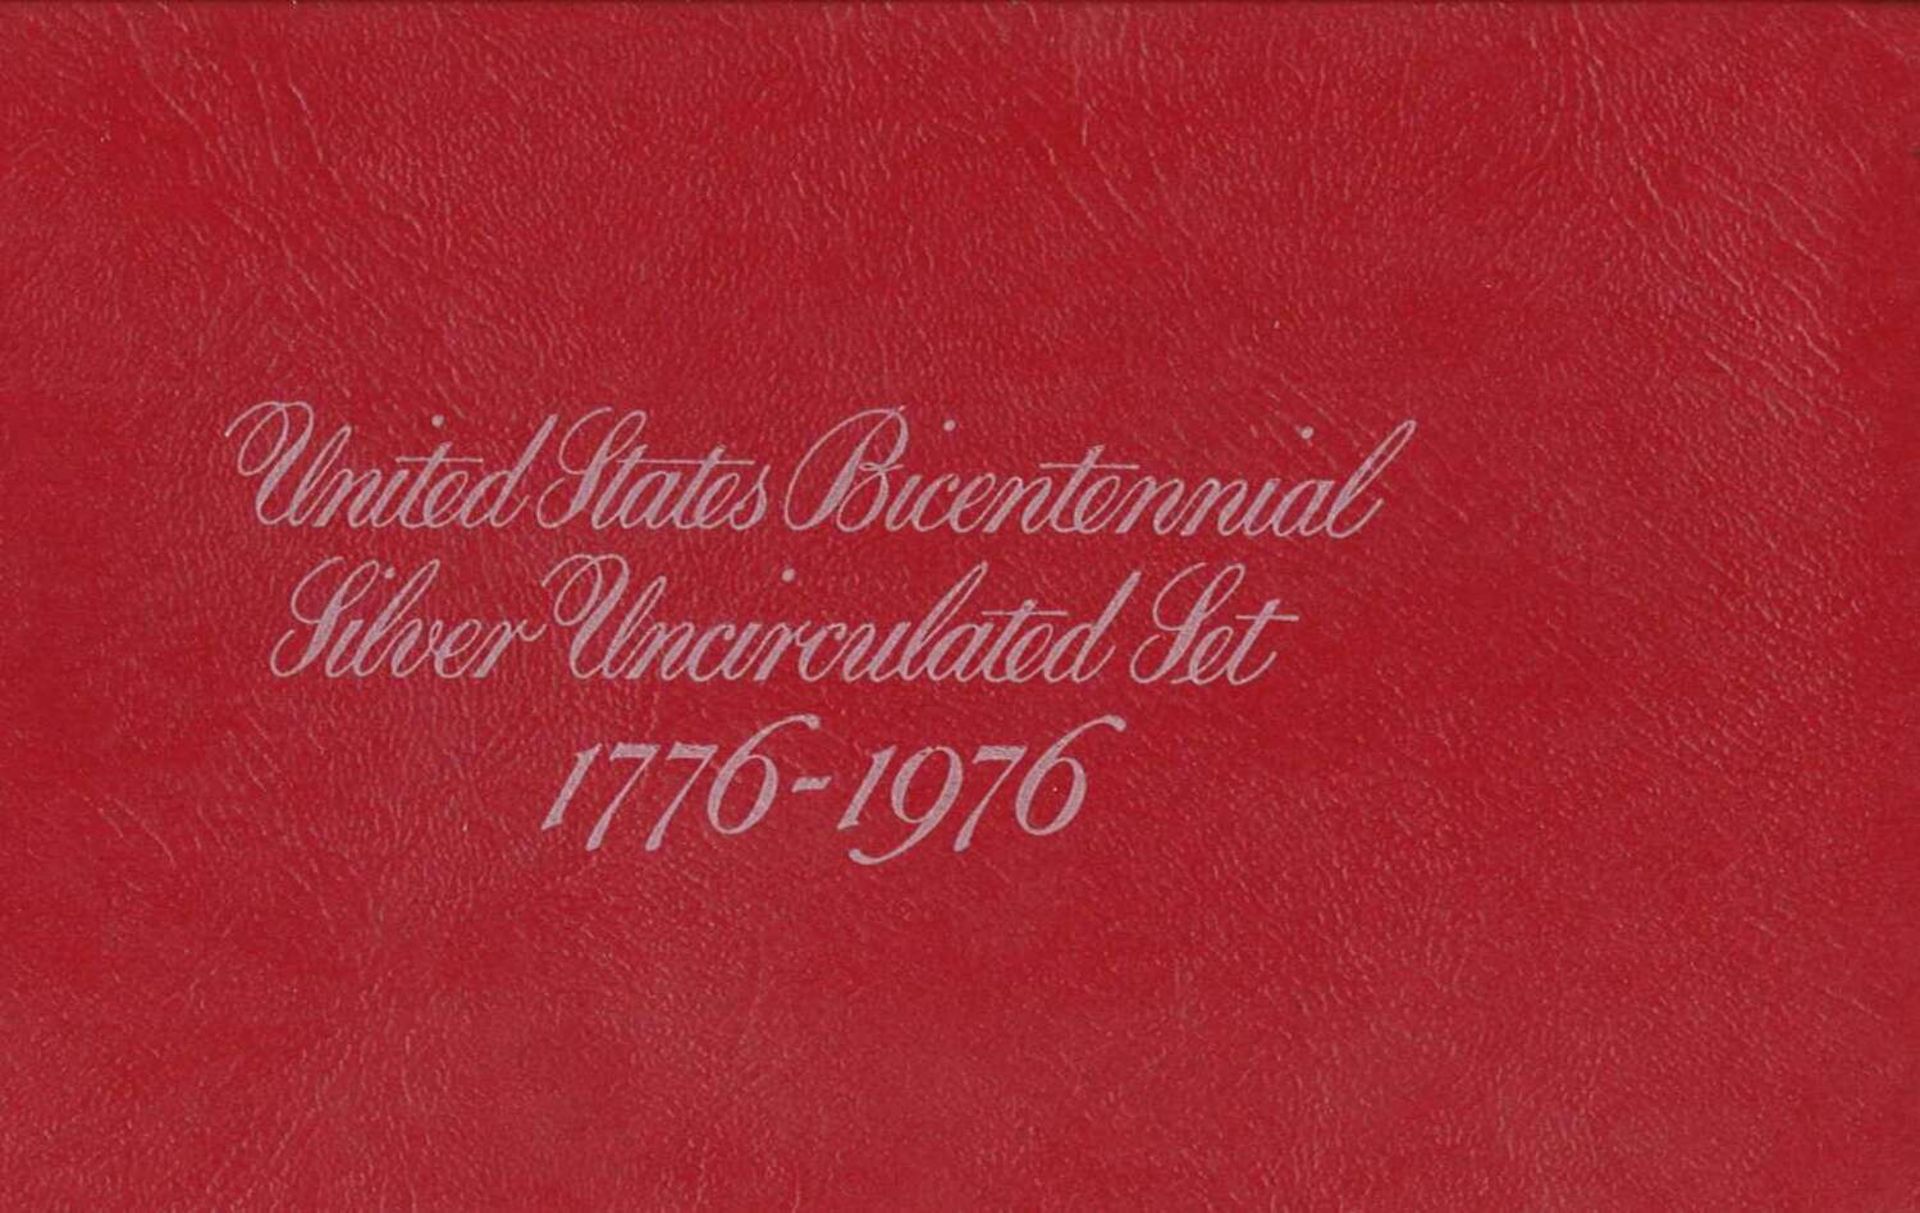 United States Bicentennial Silver Uncirculated Set 1776 - 1976, Gedenkmünzen Münzen Dollar. - Bild 3 aus 4